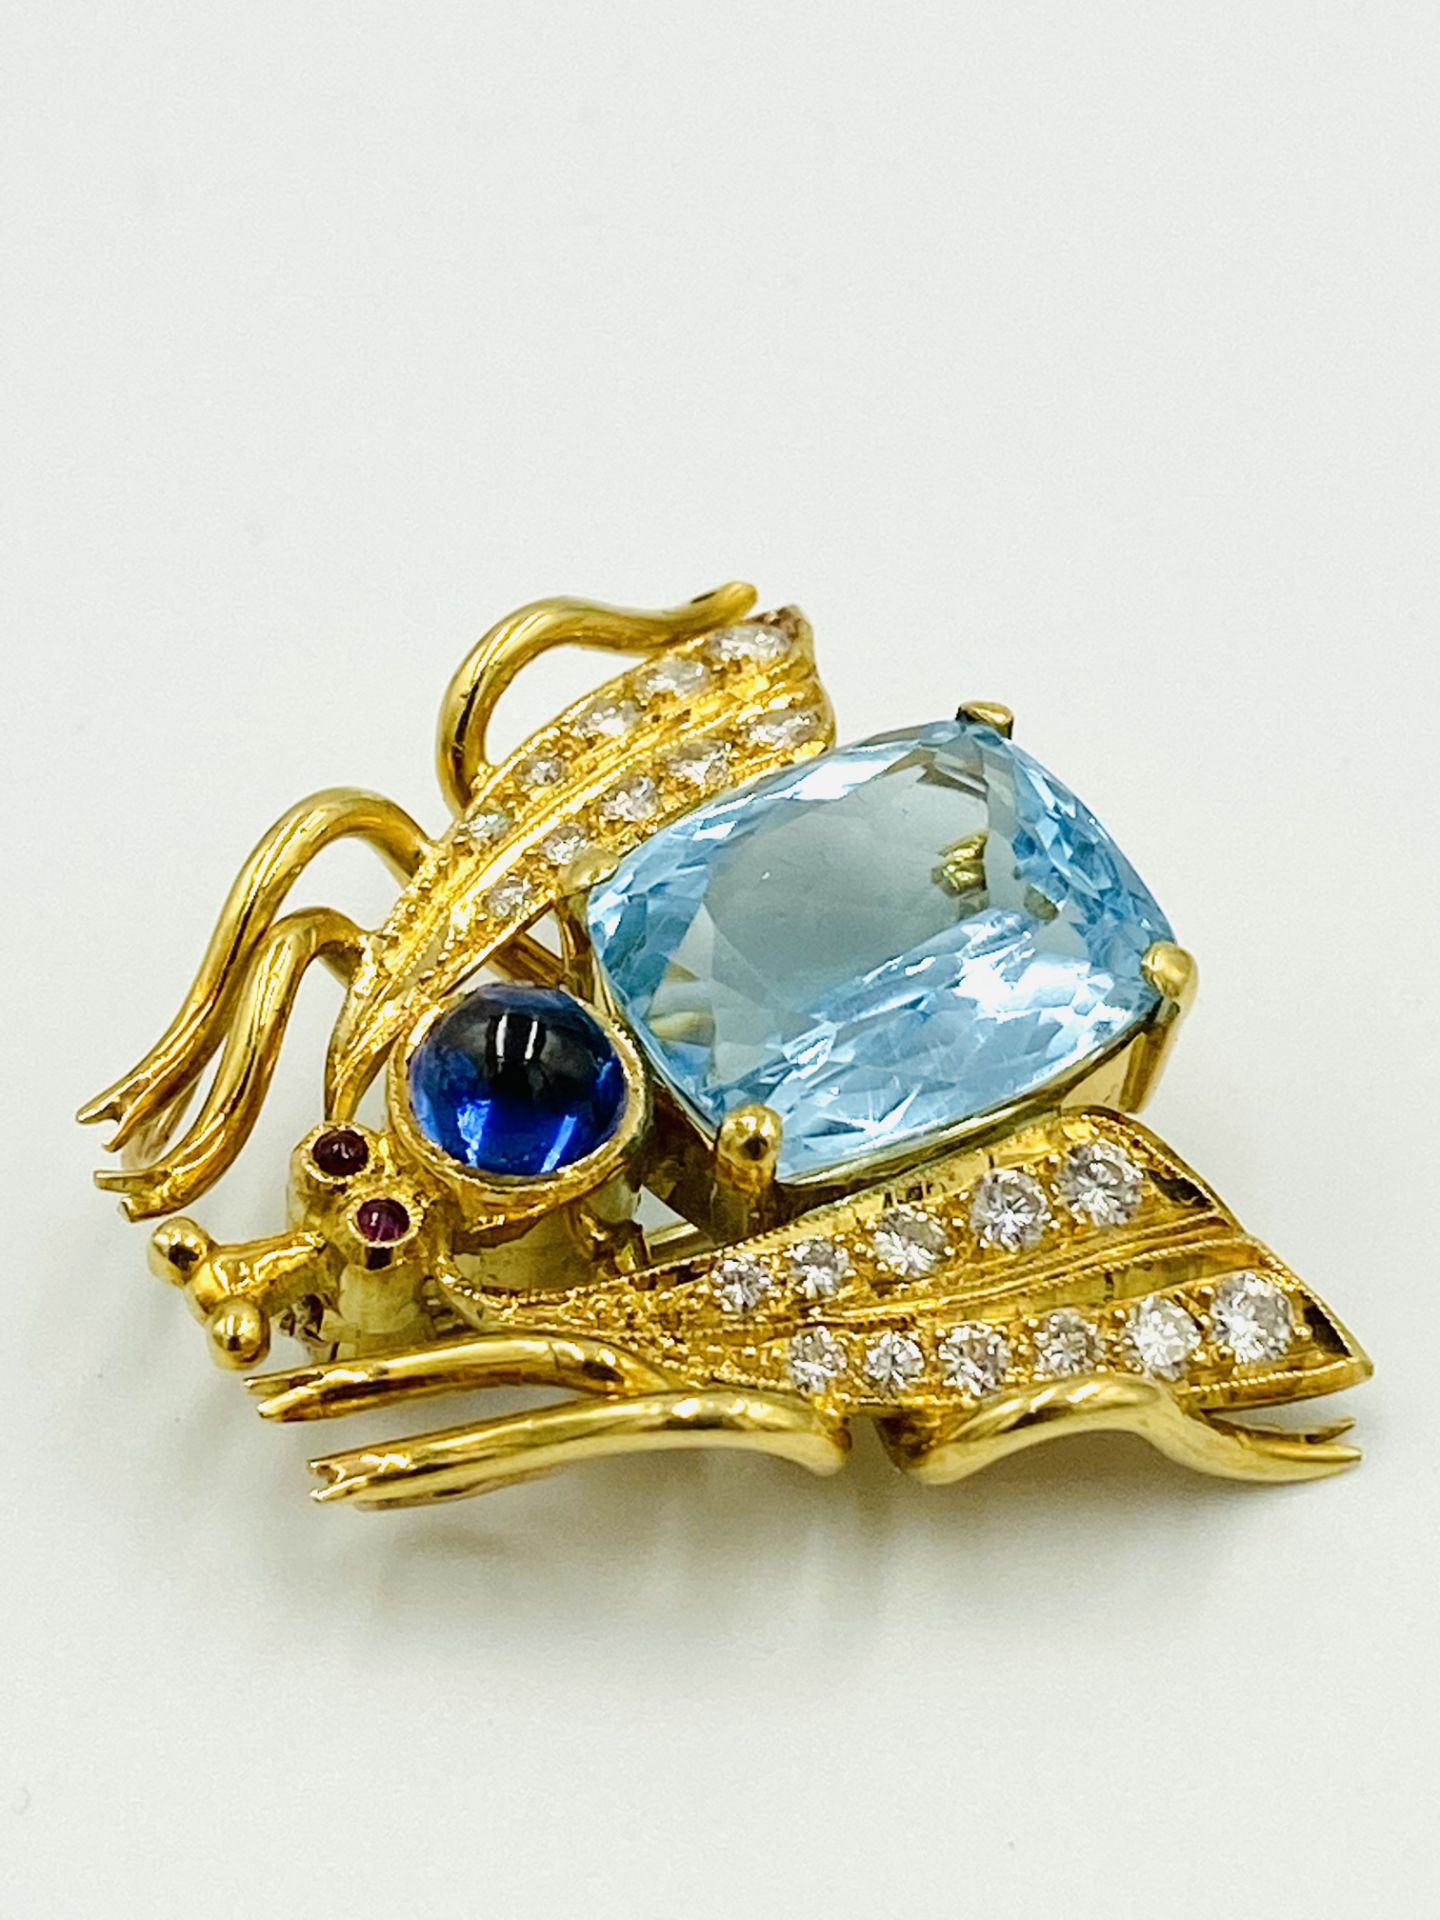 18ct gold gem set brooch - Image 3 of 6